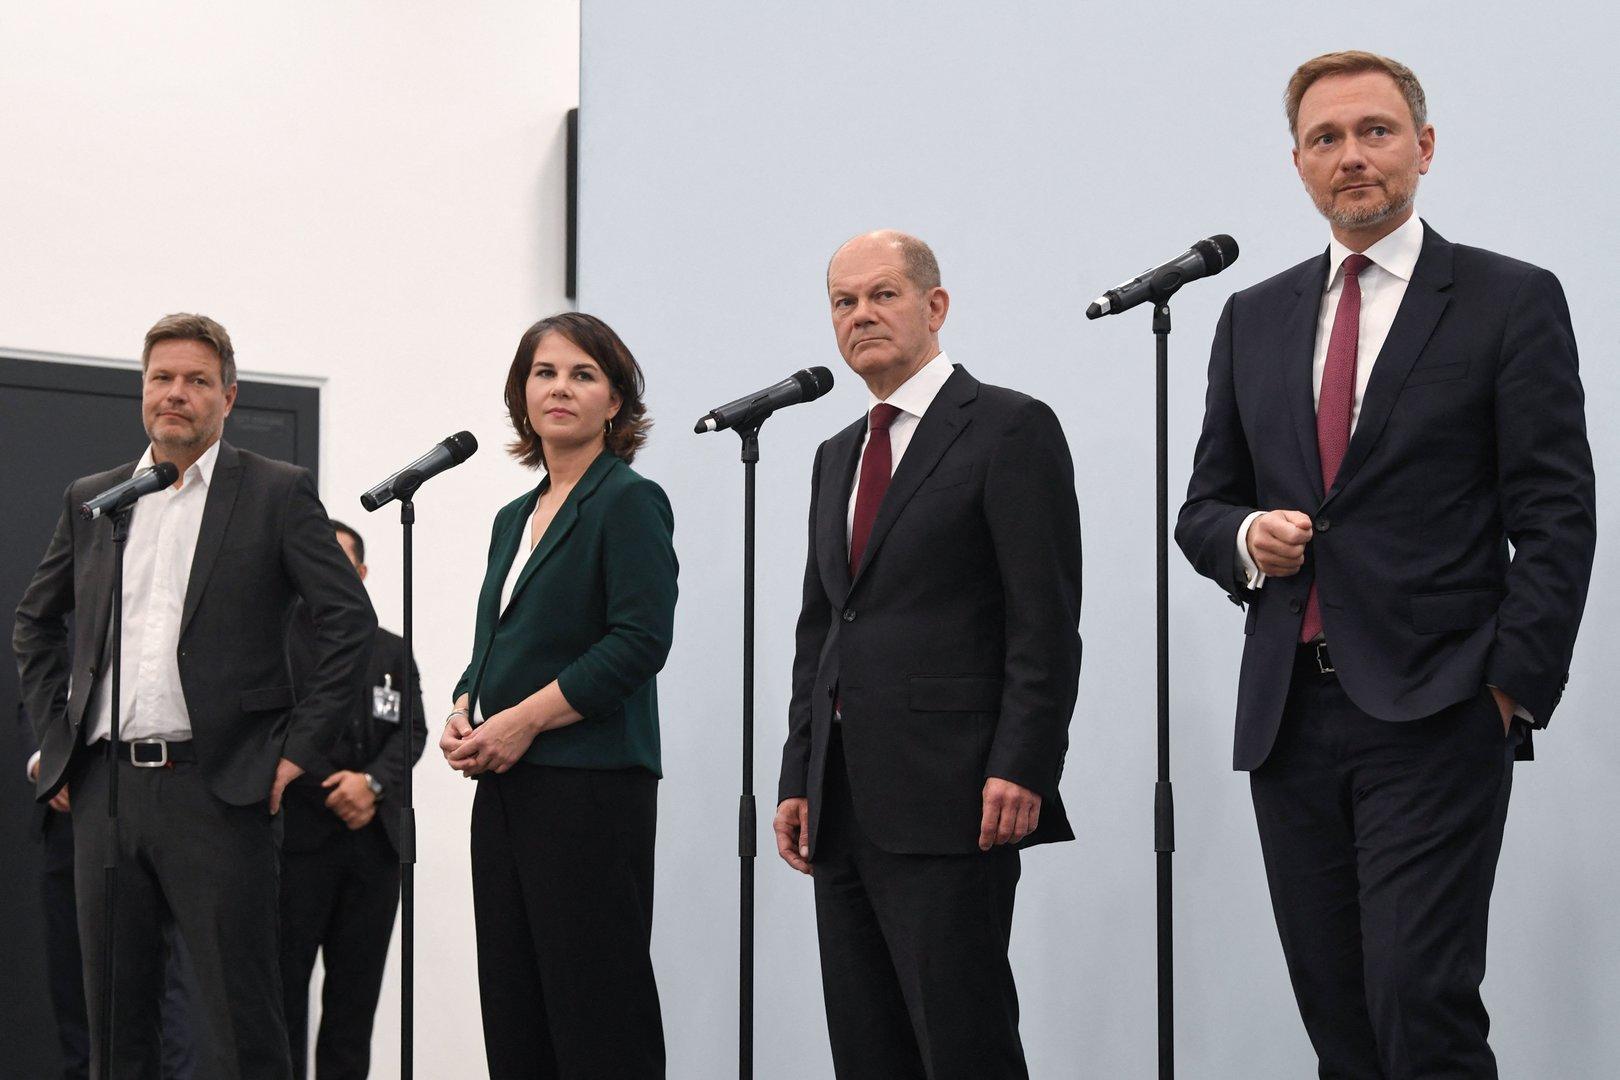 Erste Lichtsignale aus Berlin - SPD, Grüne und FDP empfehlen Koalitionsverhandlungen 